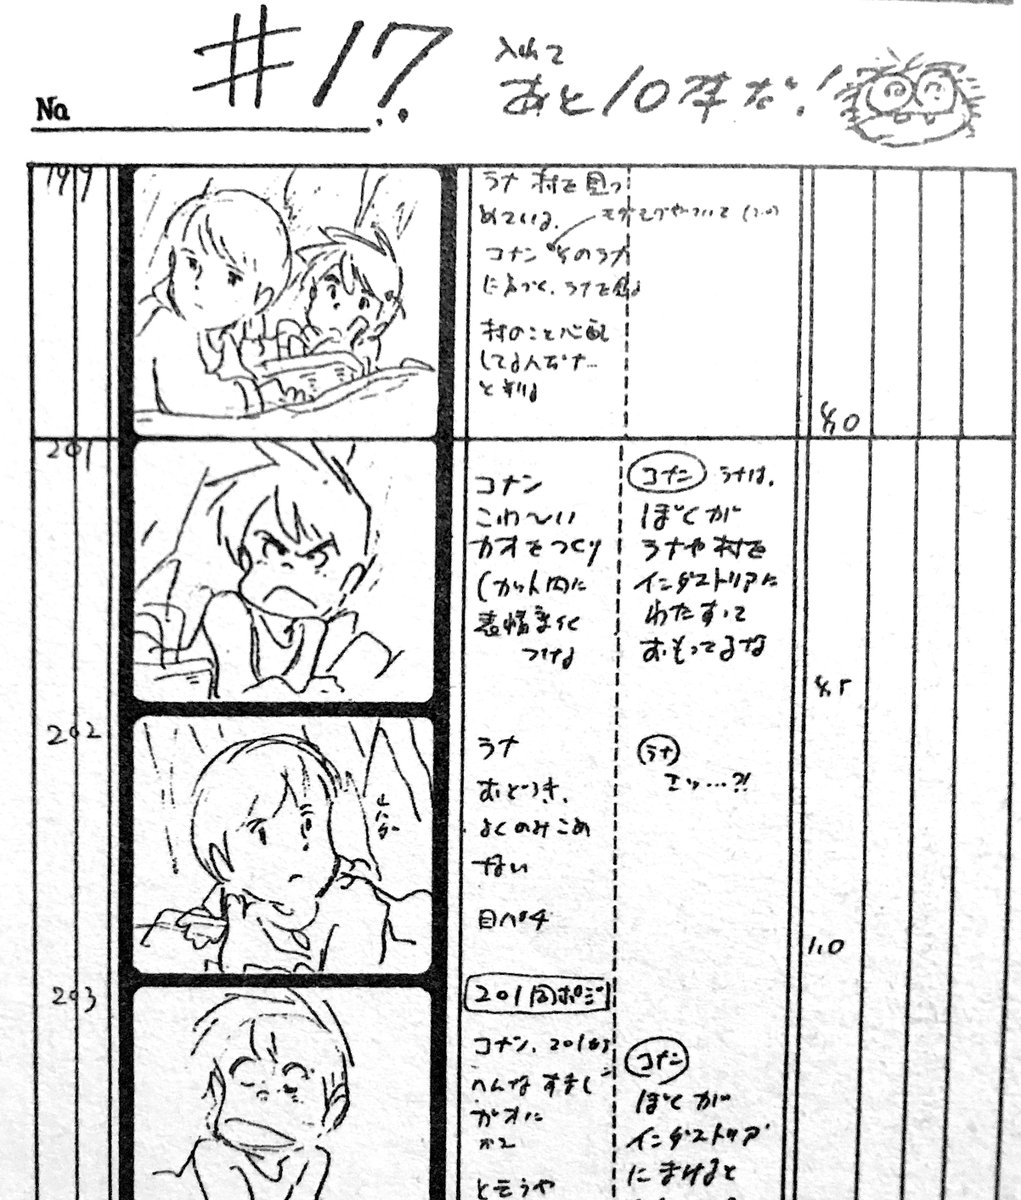 #宮崎駿 監督が描く絵コンテにもついにカウントダウンが。
あえて「こわ〜いカオをつくり」ラナを励ますコナン。
泣き顔のテラもそうですが、表情がコロコロ変わるのが見所のひとつ。
#未来少年コナン 